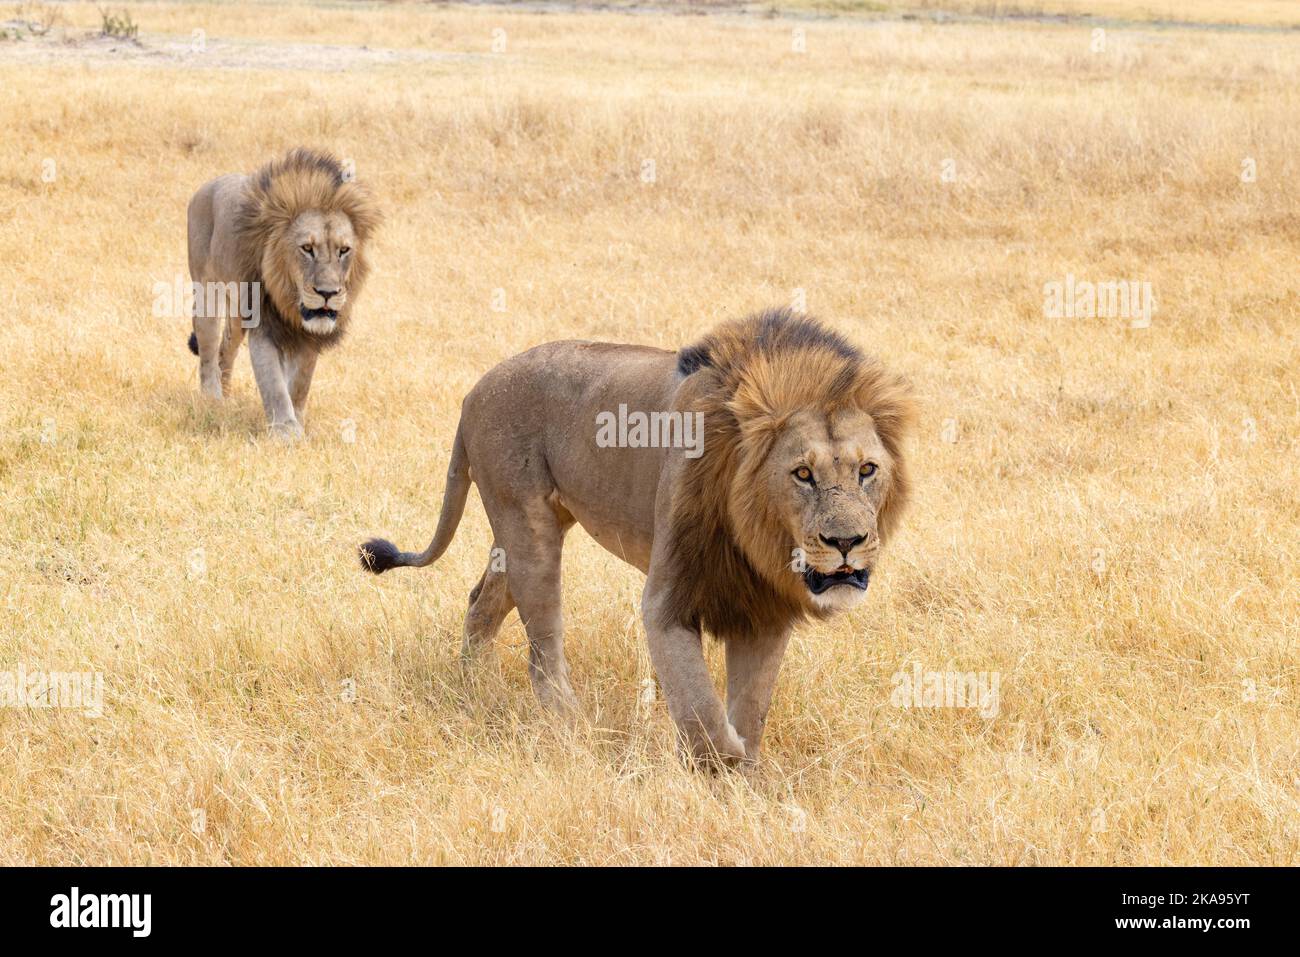 Deux magnifiques Lions mâles adultes, Panthera leo, marchant dans les prairies; Moremi Game Reserve, Okavango Delta Botswana Africa. Animaux africains. Banque D'Images